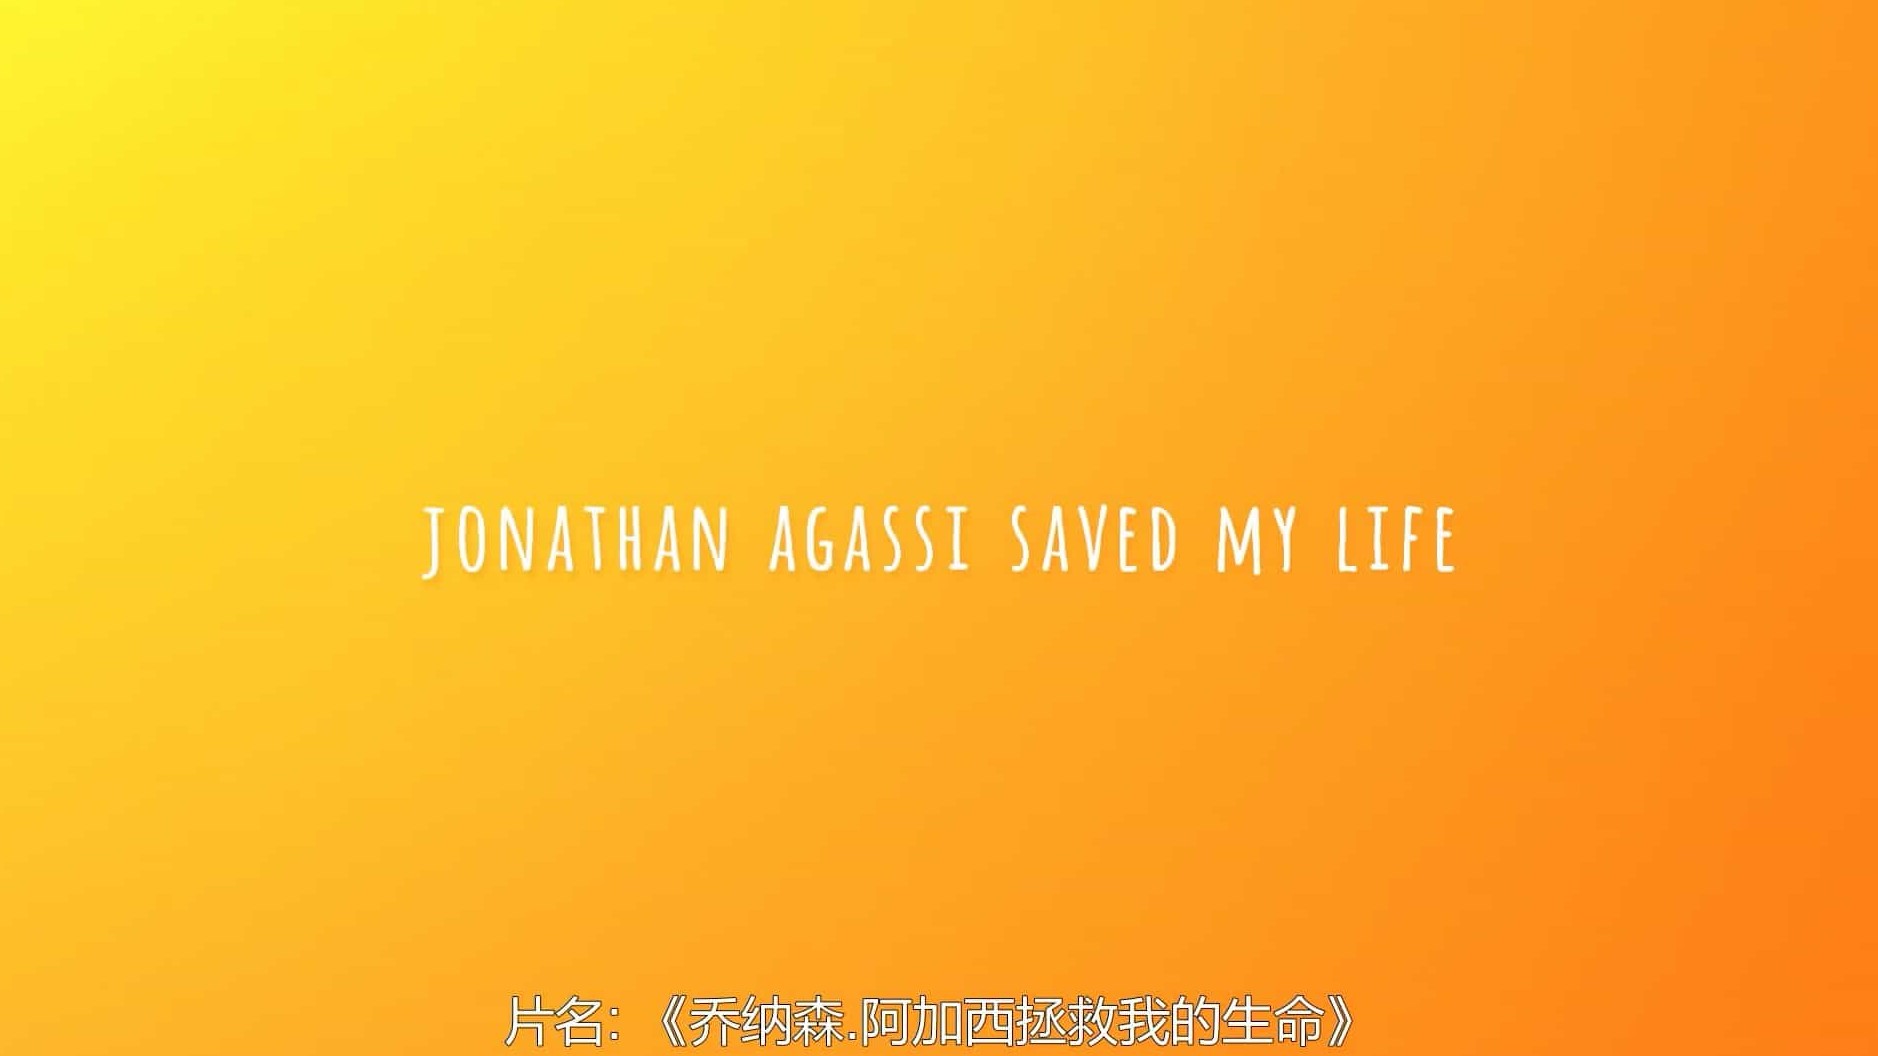 以色列纪录片《乔纳森·阿加西拯救我的生命 Jonathan Agassi Saved My Life 2018》全1集 英语中字 1080P高清网盘下载 